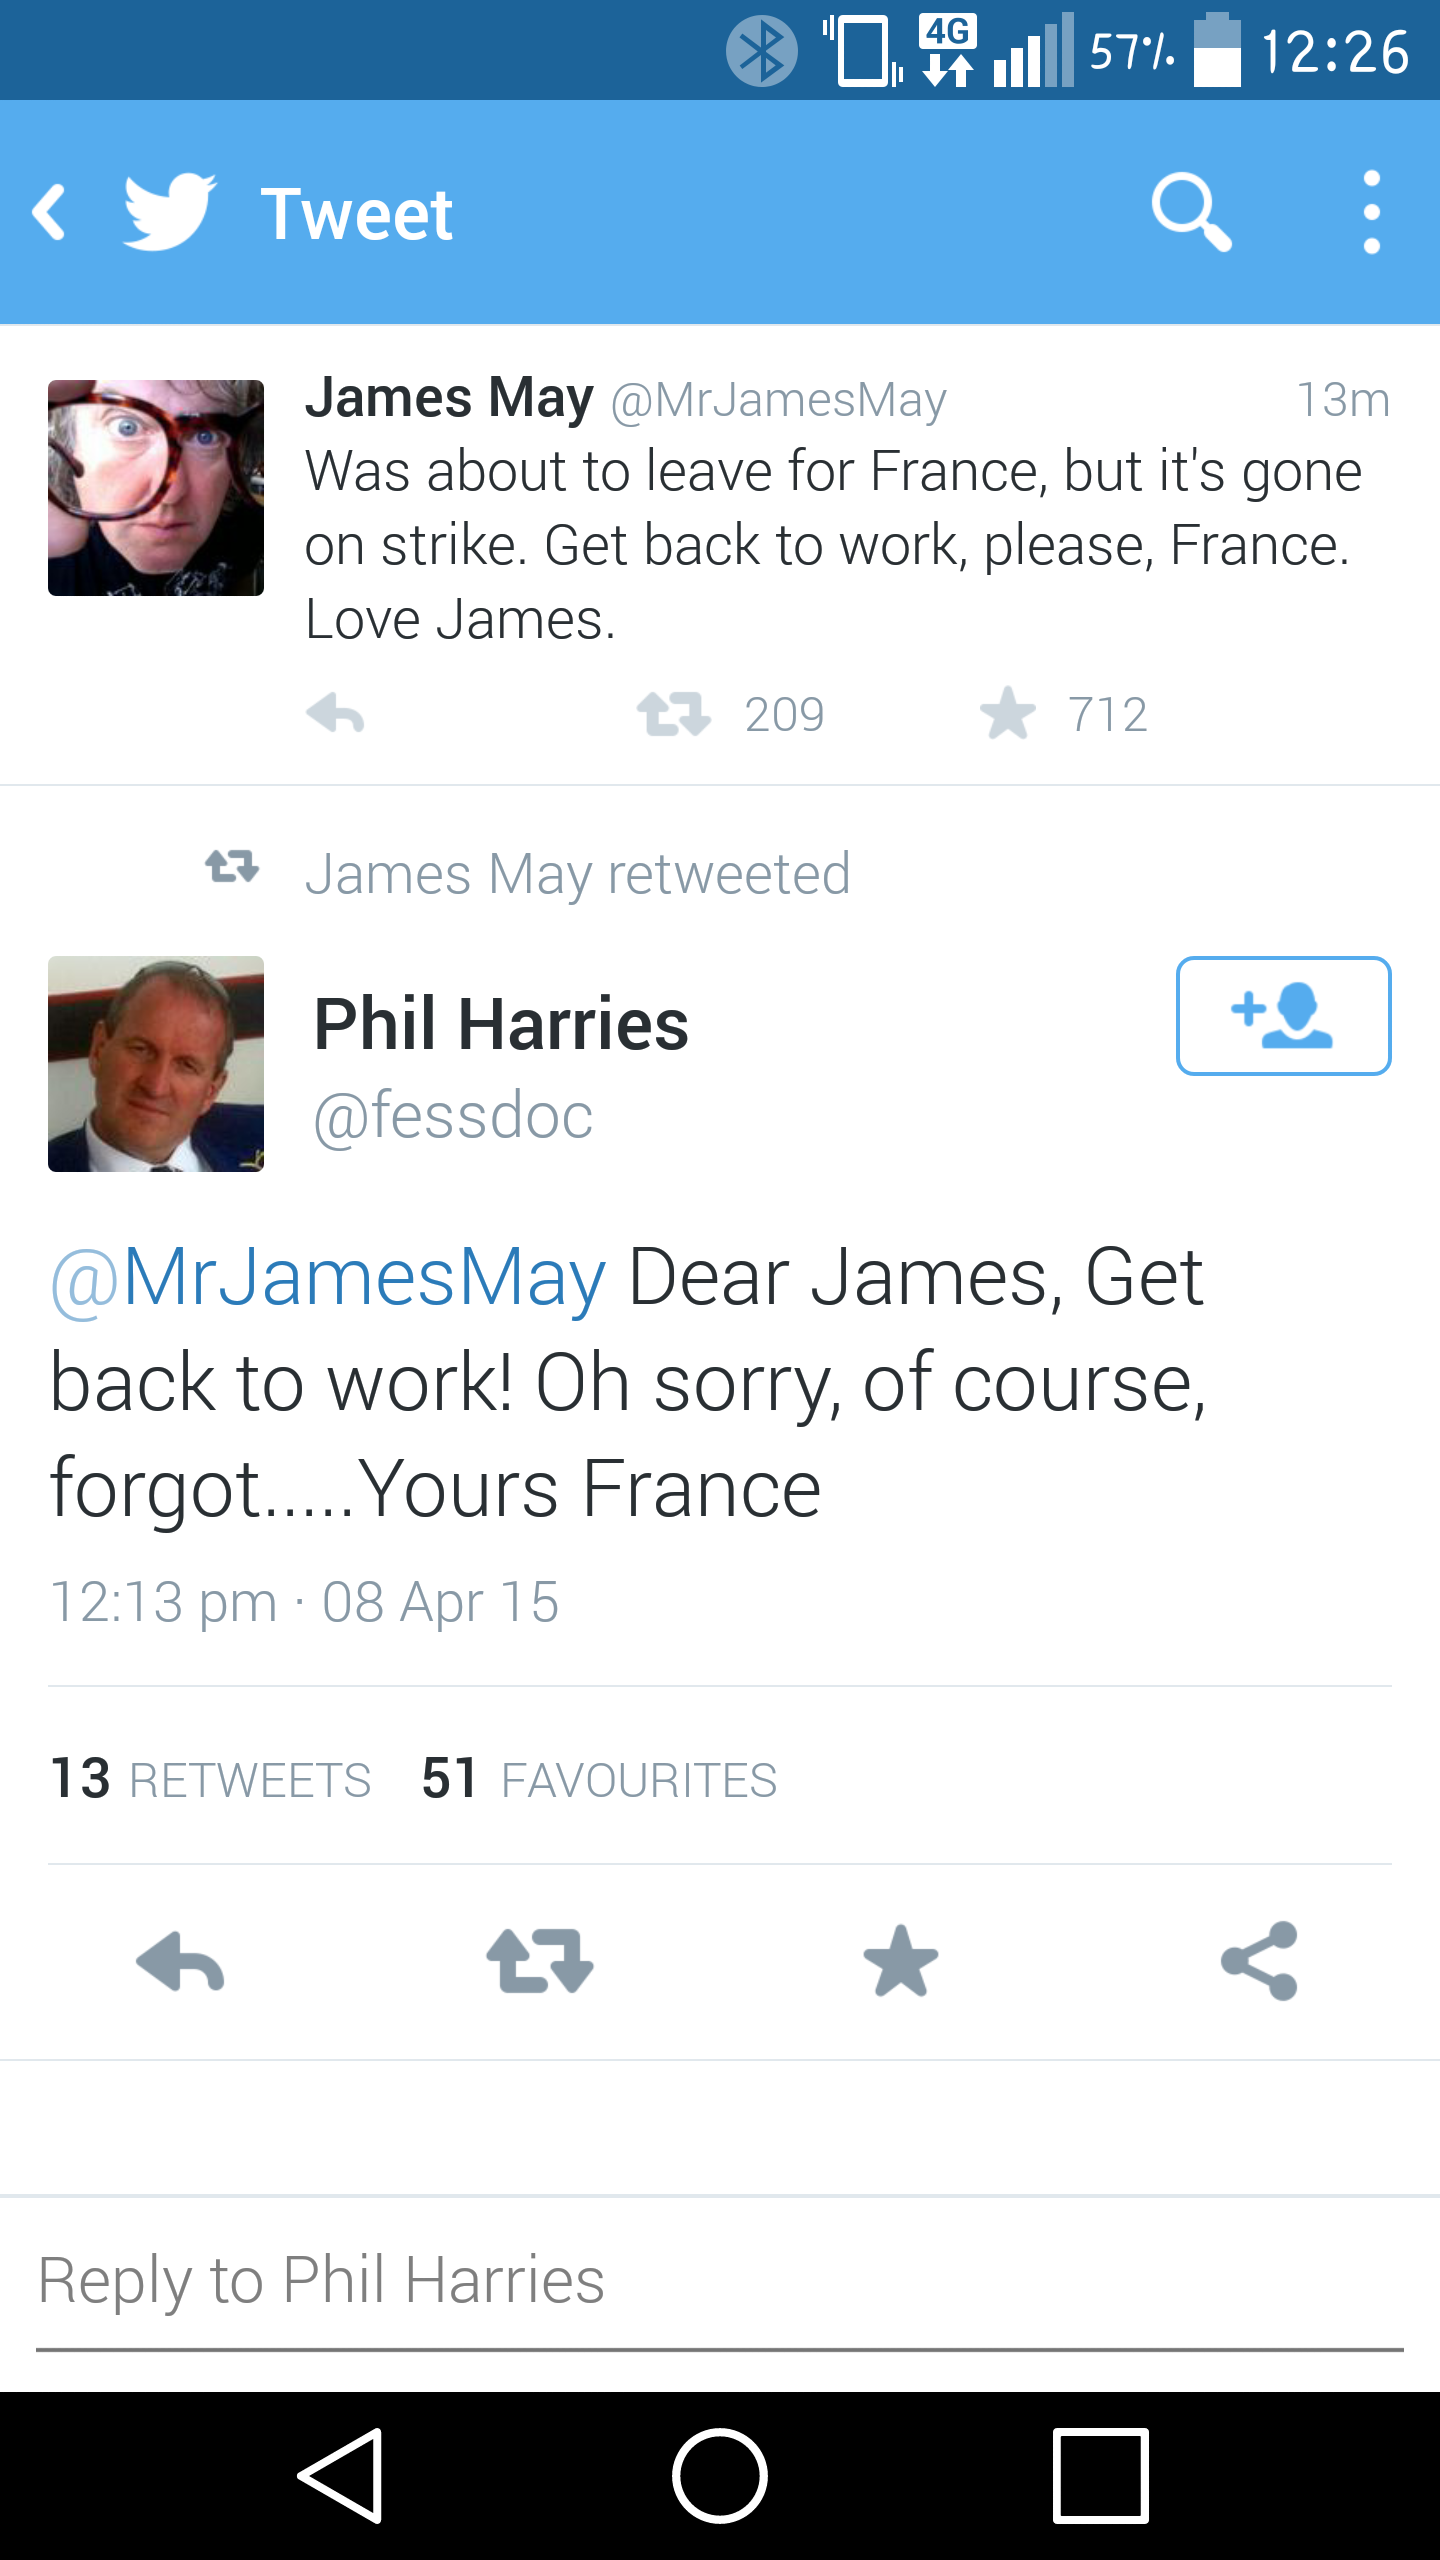 James May just got rekt!